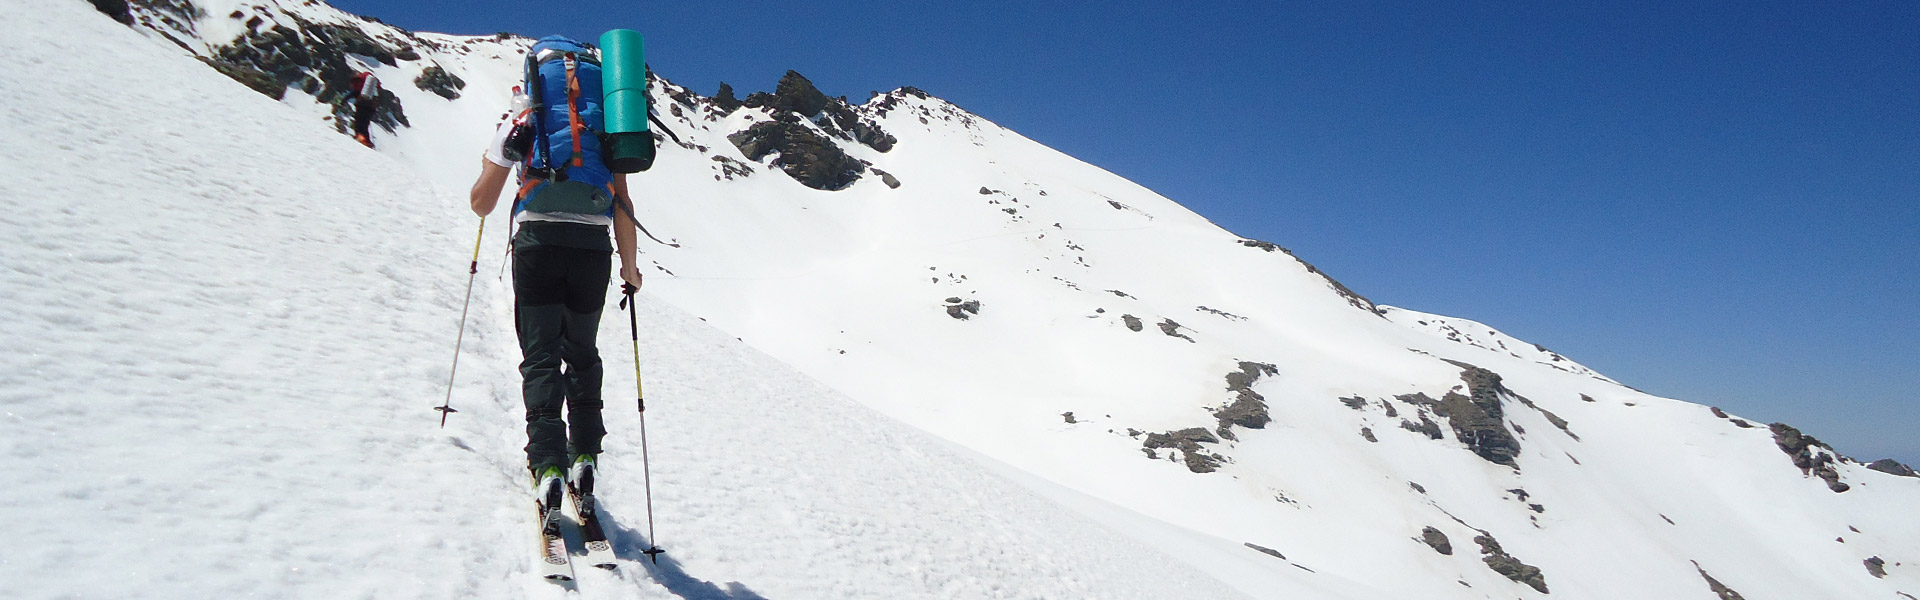 Esquí de montaña en Sierra Nevada. Subiendo al pico Elorrieta